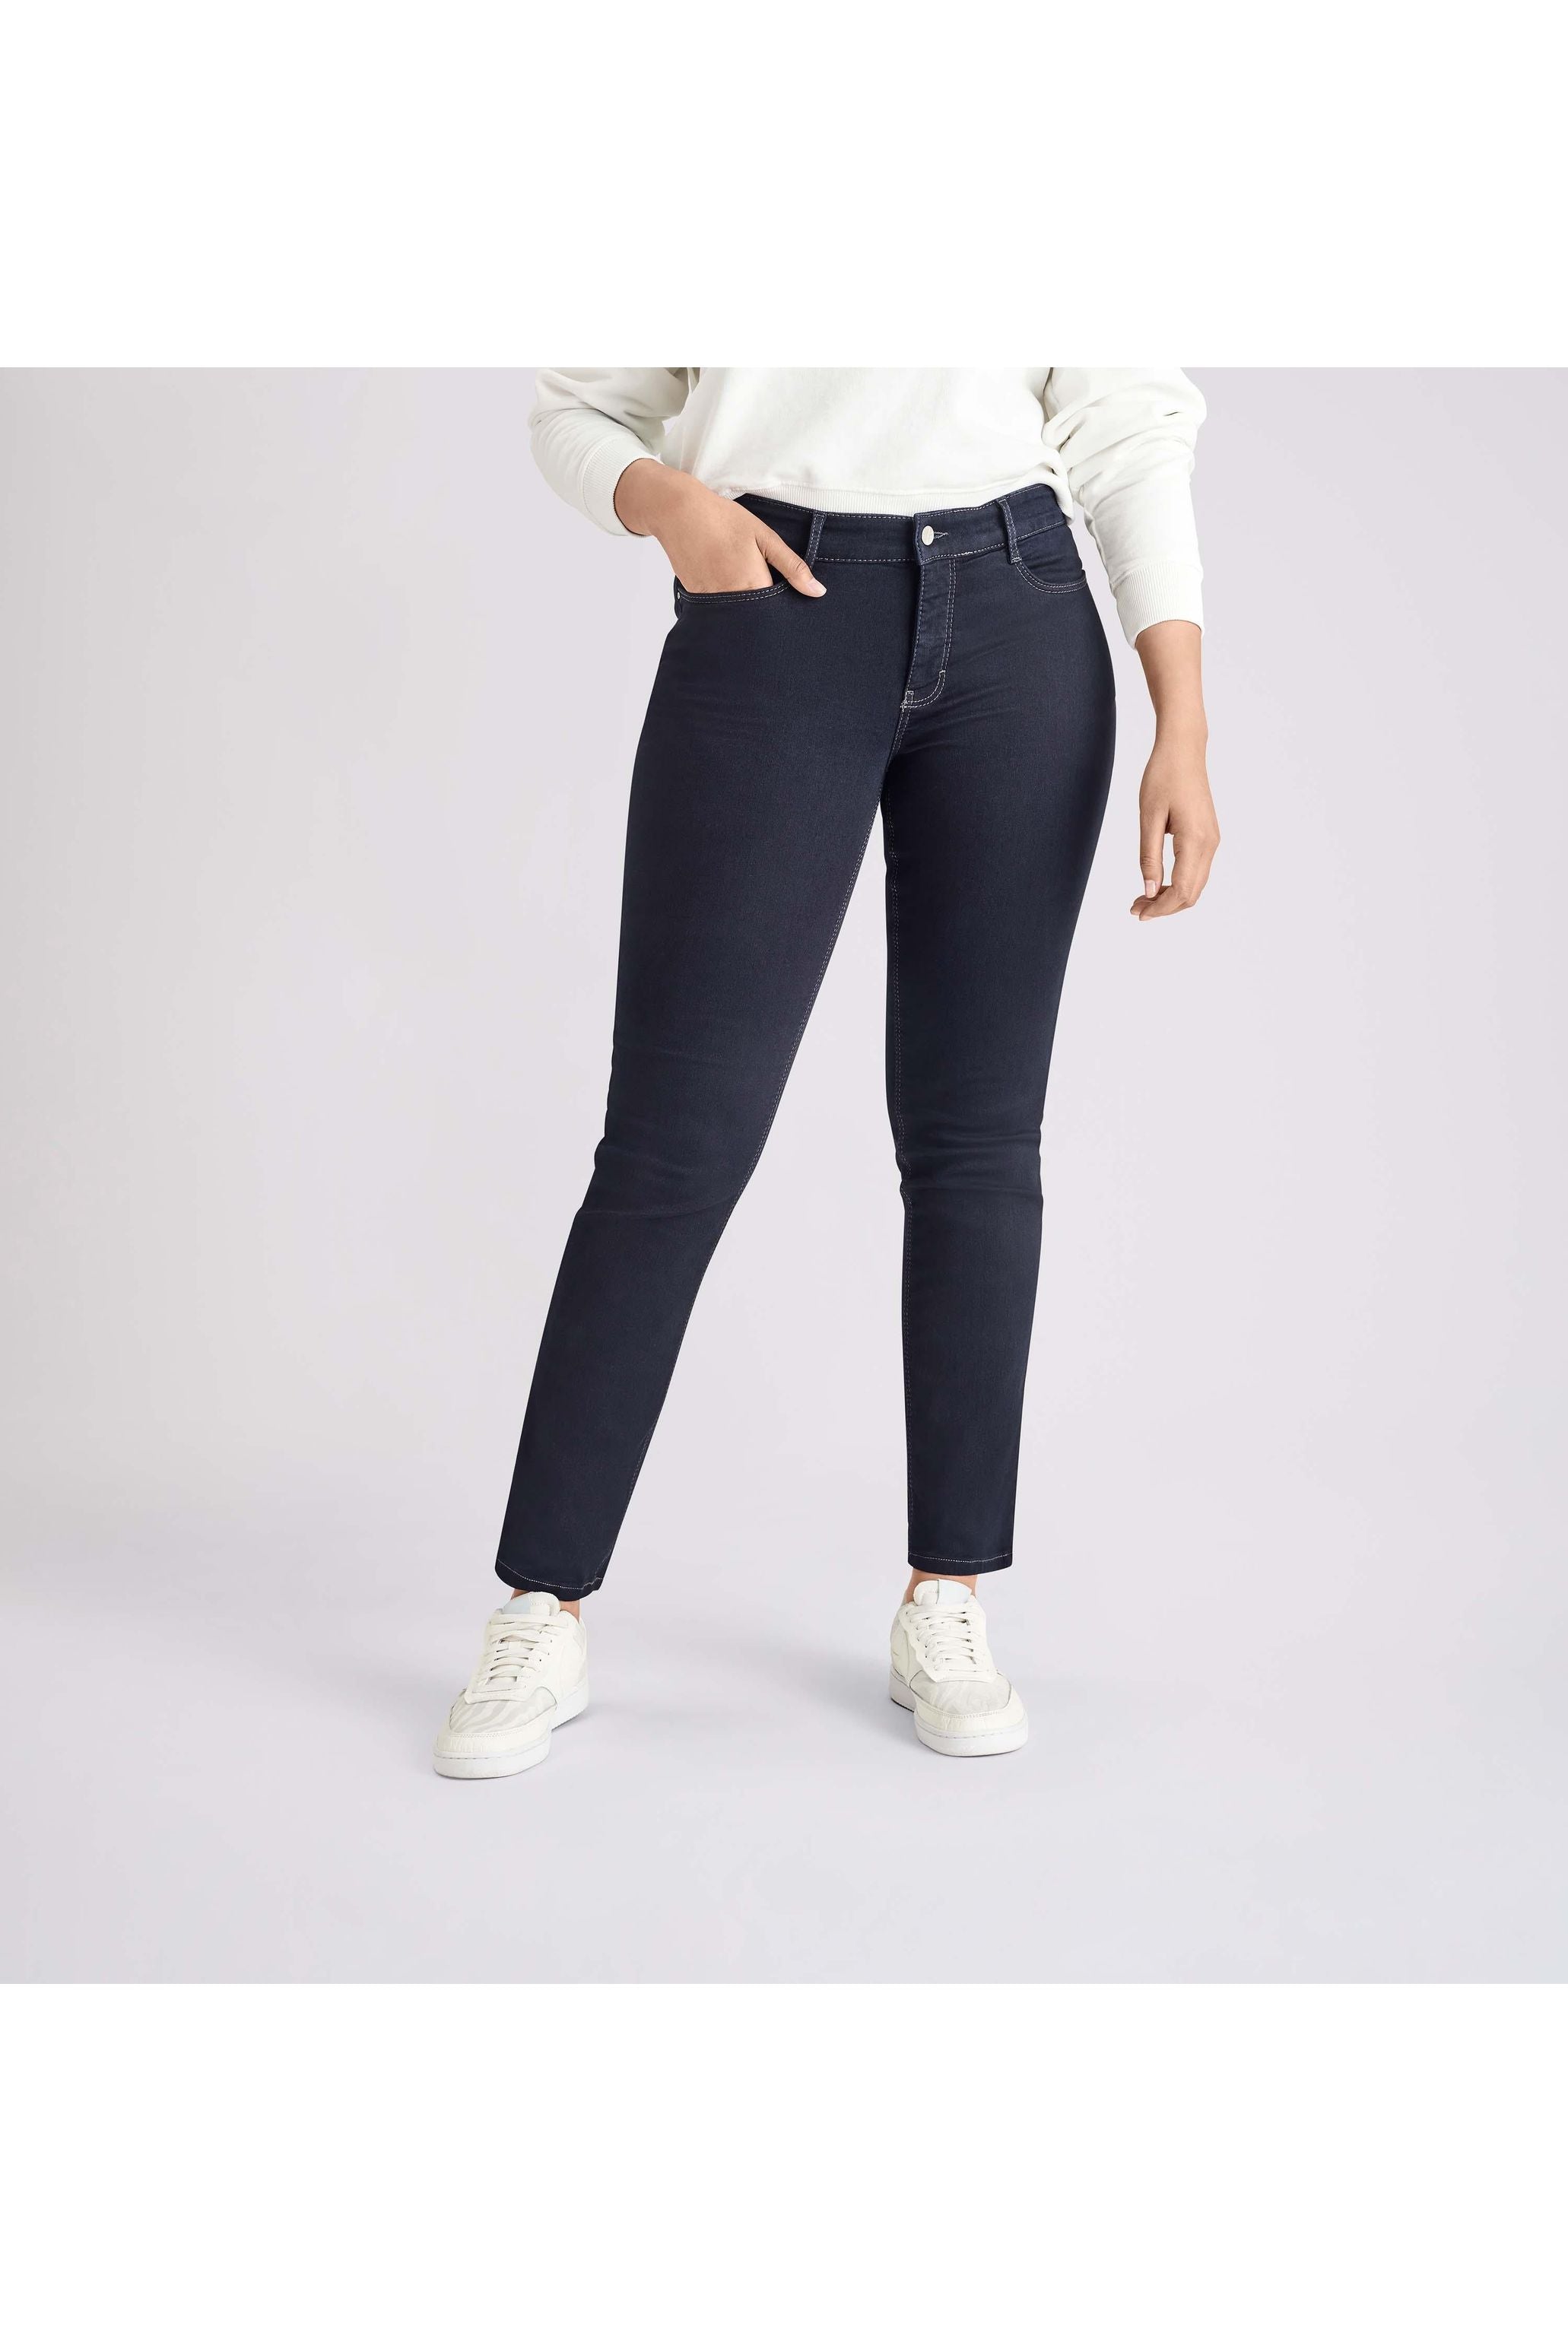 Mac Jeans Dream Denim Straight Legs 5401-90-355L | D801 Dark Rinsewash –  Robertson Madison | Slim-Fit Jeans